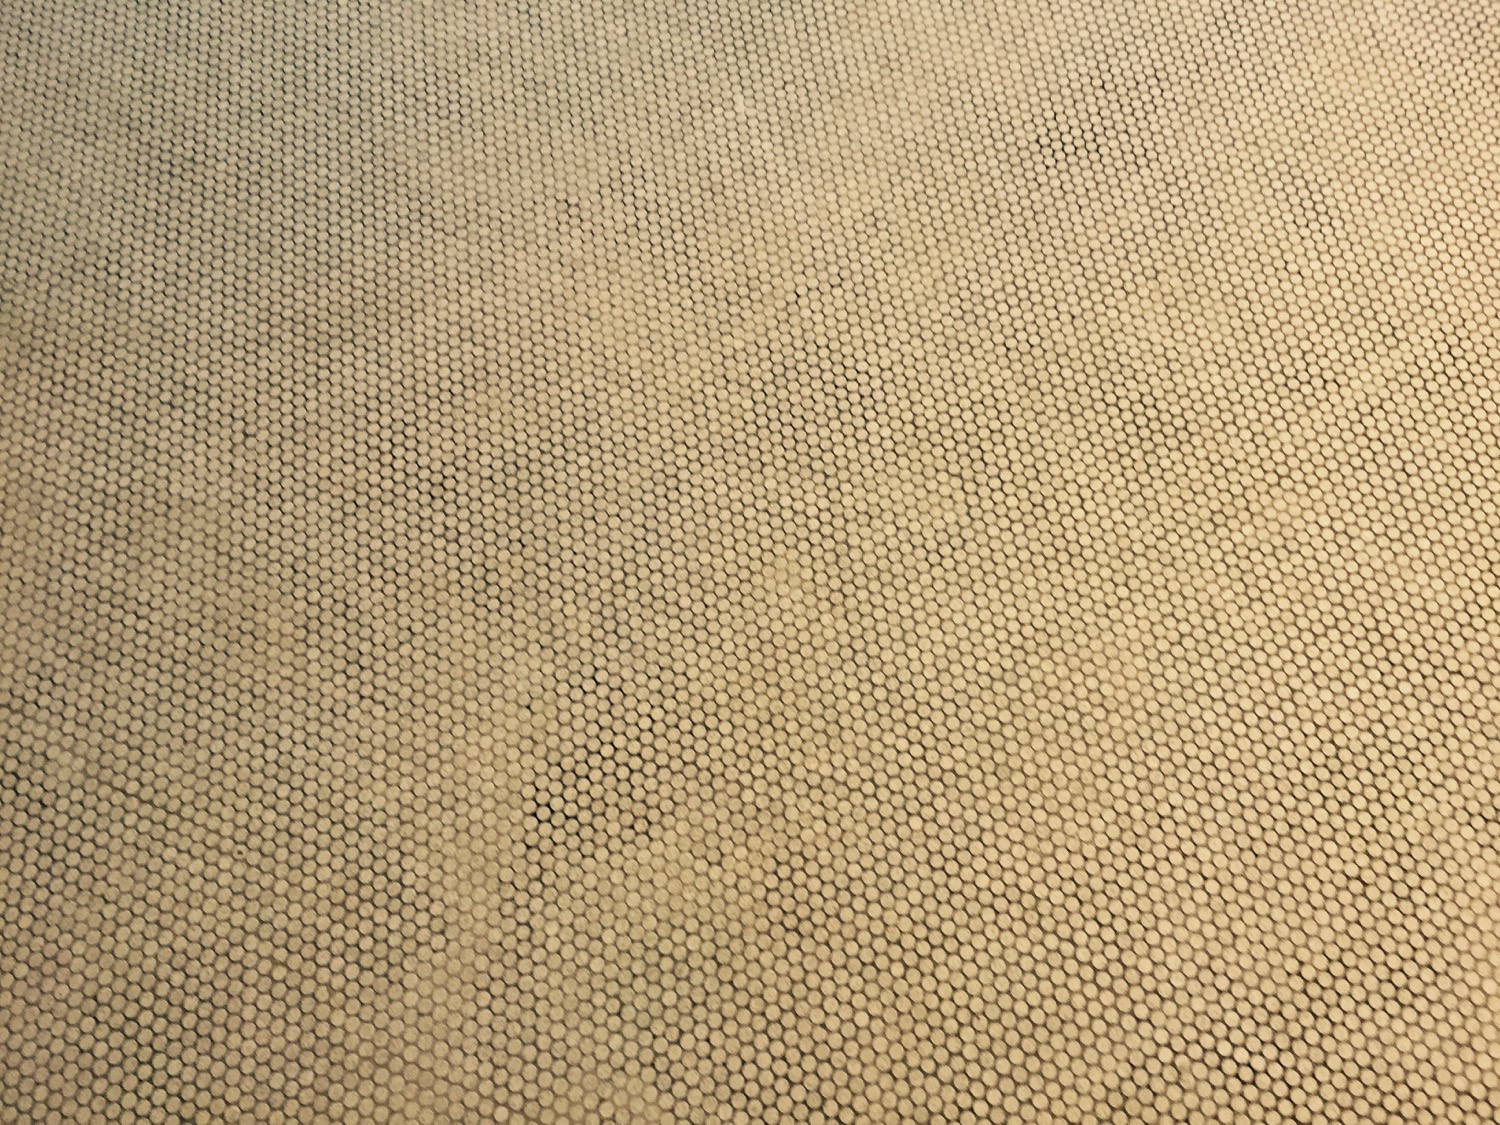 a close up of a floor